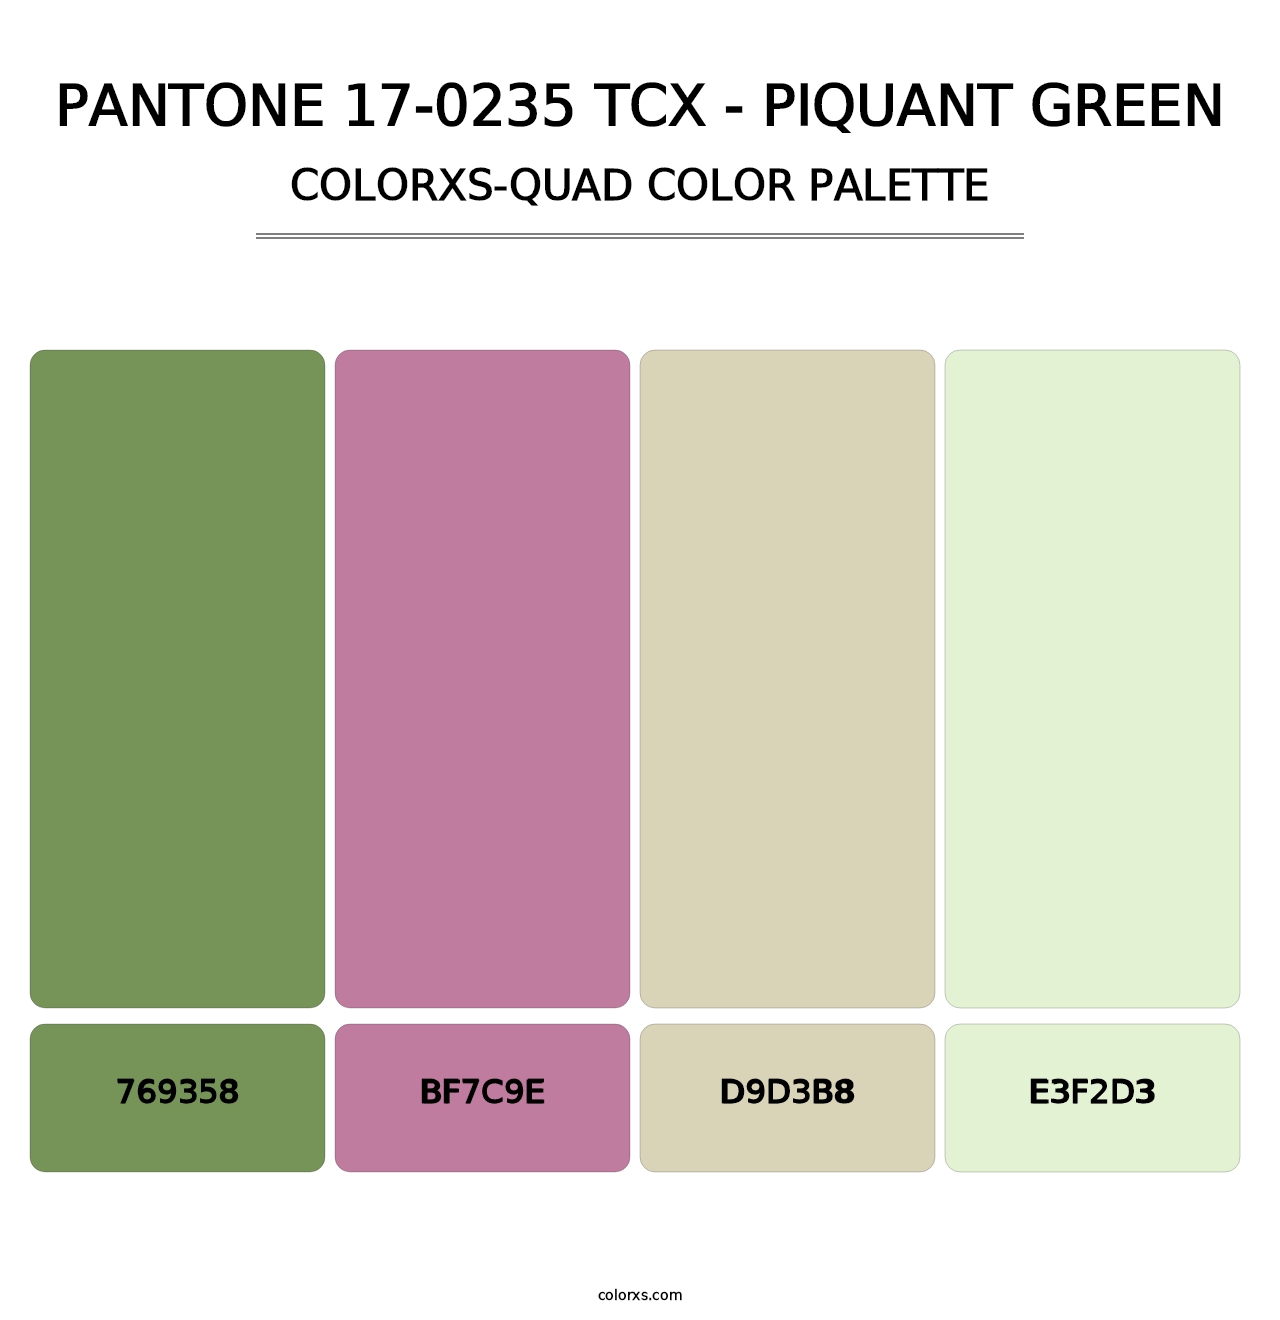 PANTONE 17-0235 TCX - Piquant Green - Colorxs Quad Palette